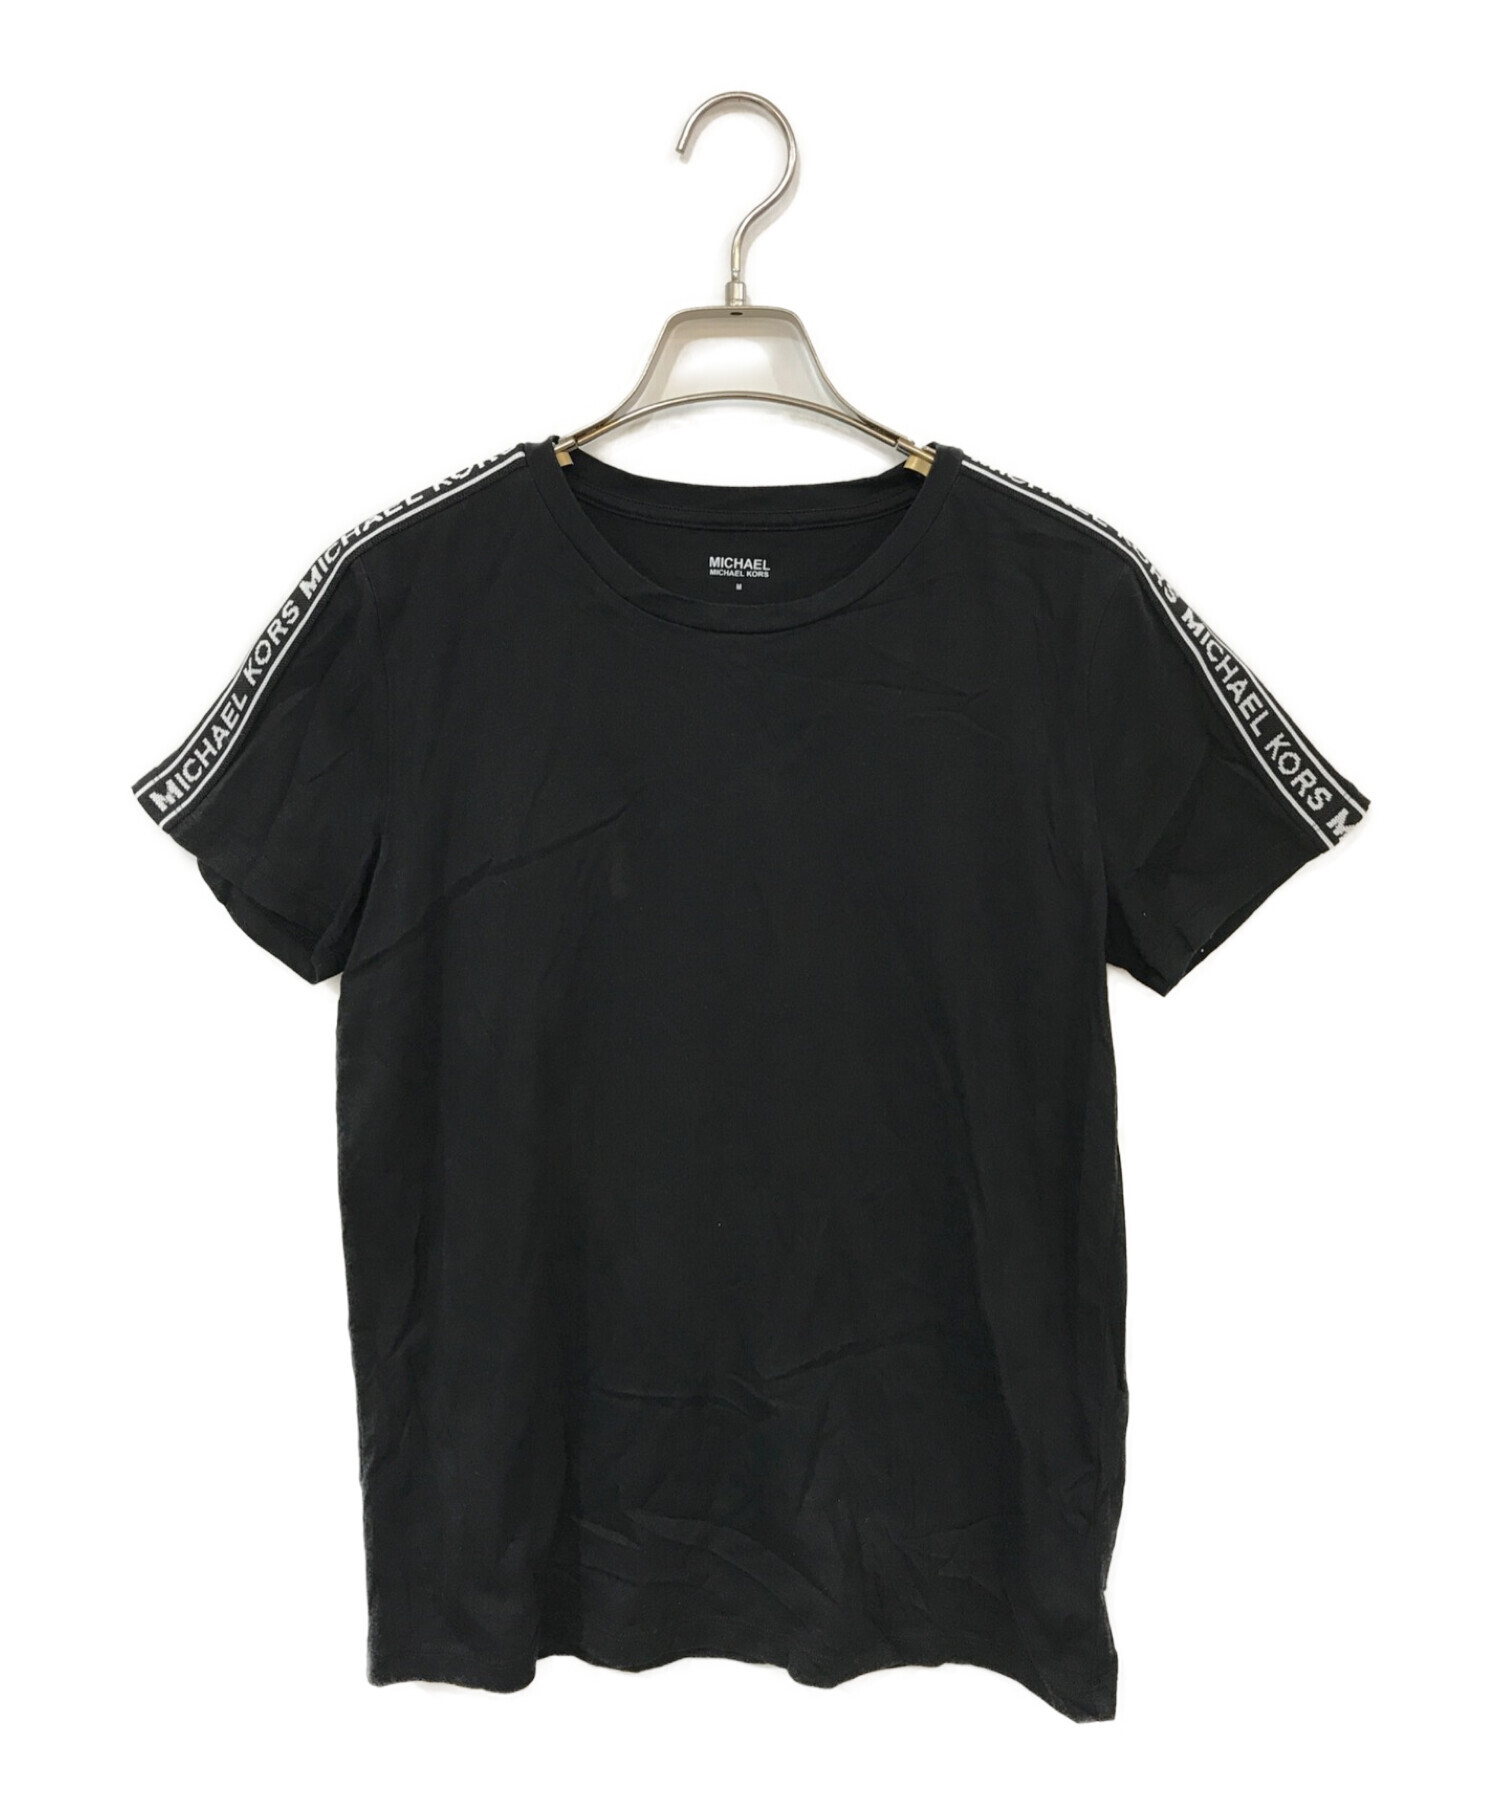 MICHAEL KORS (マイケルコース) ロゴテープTシャツ ブラック×ホワイト サイズ:M